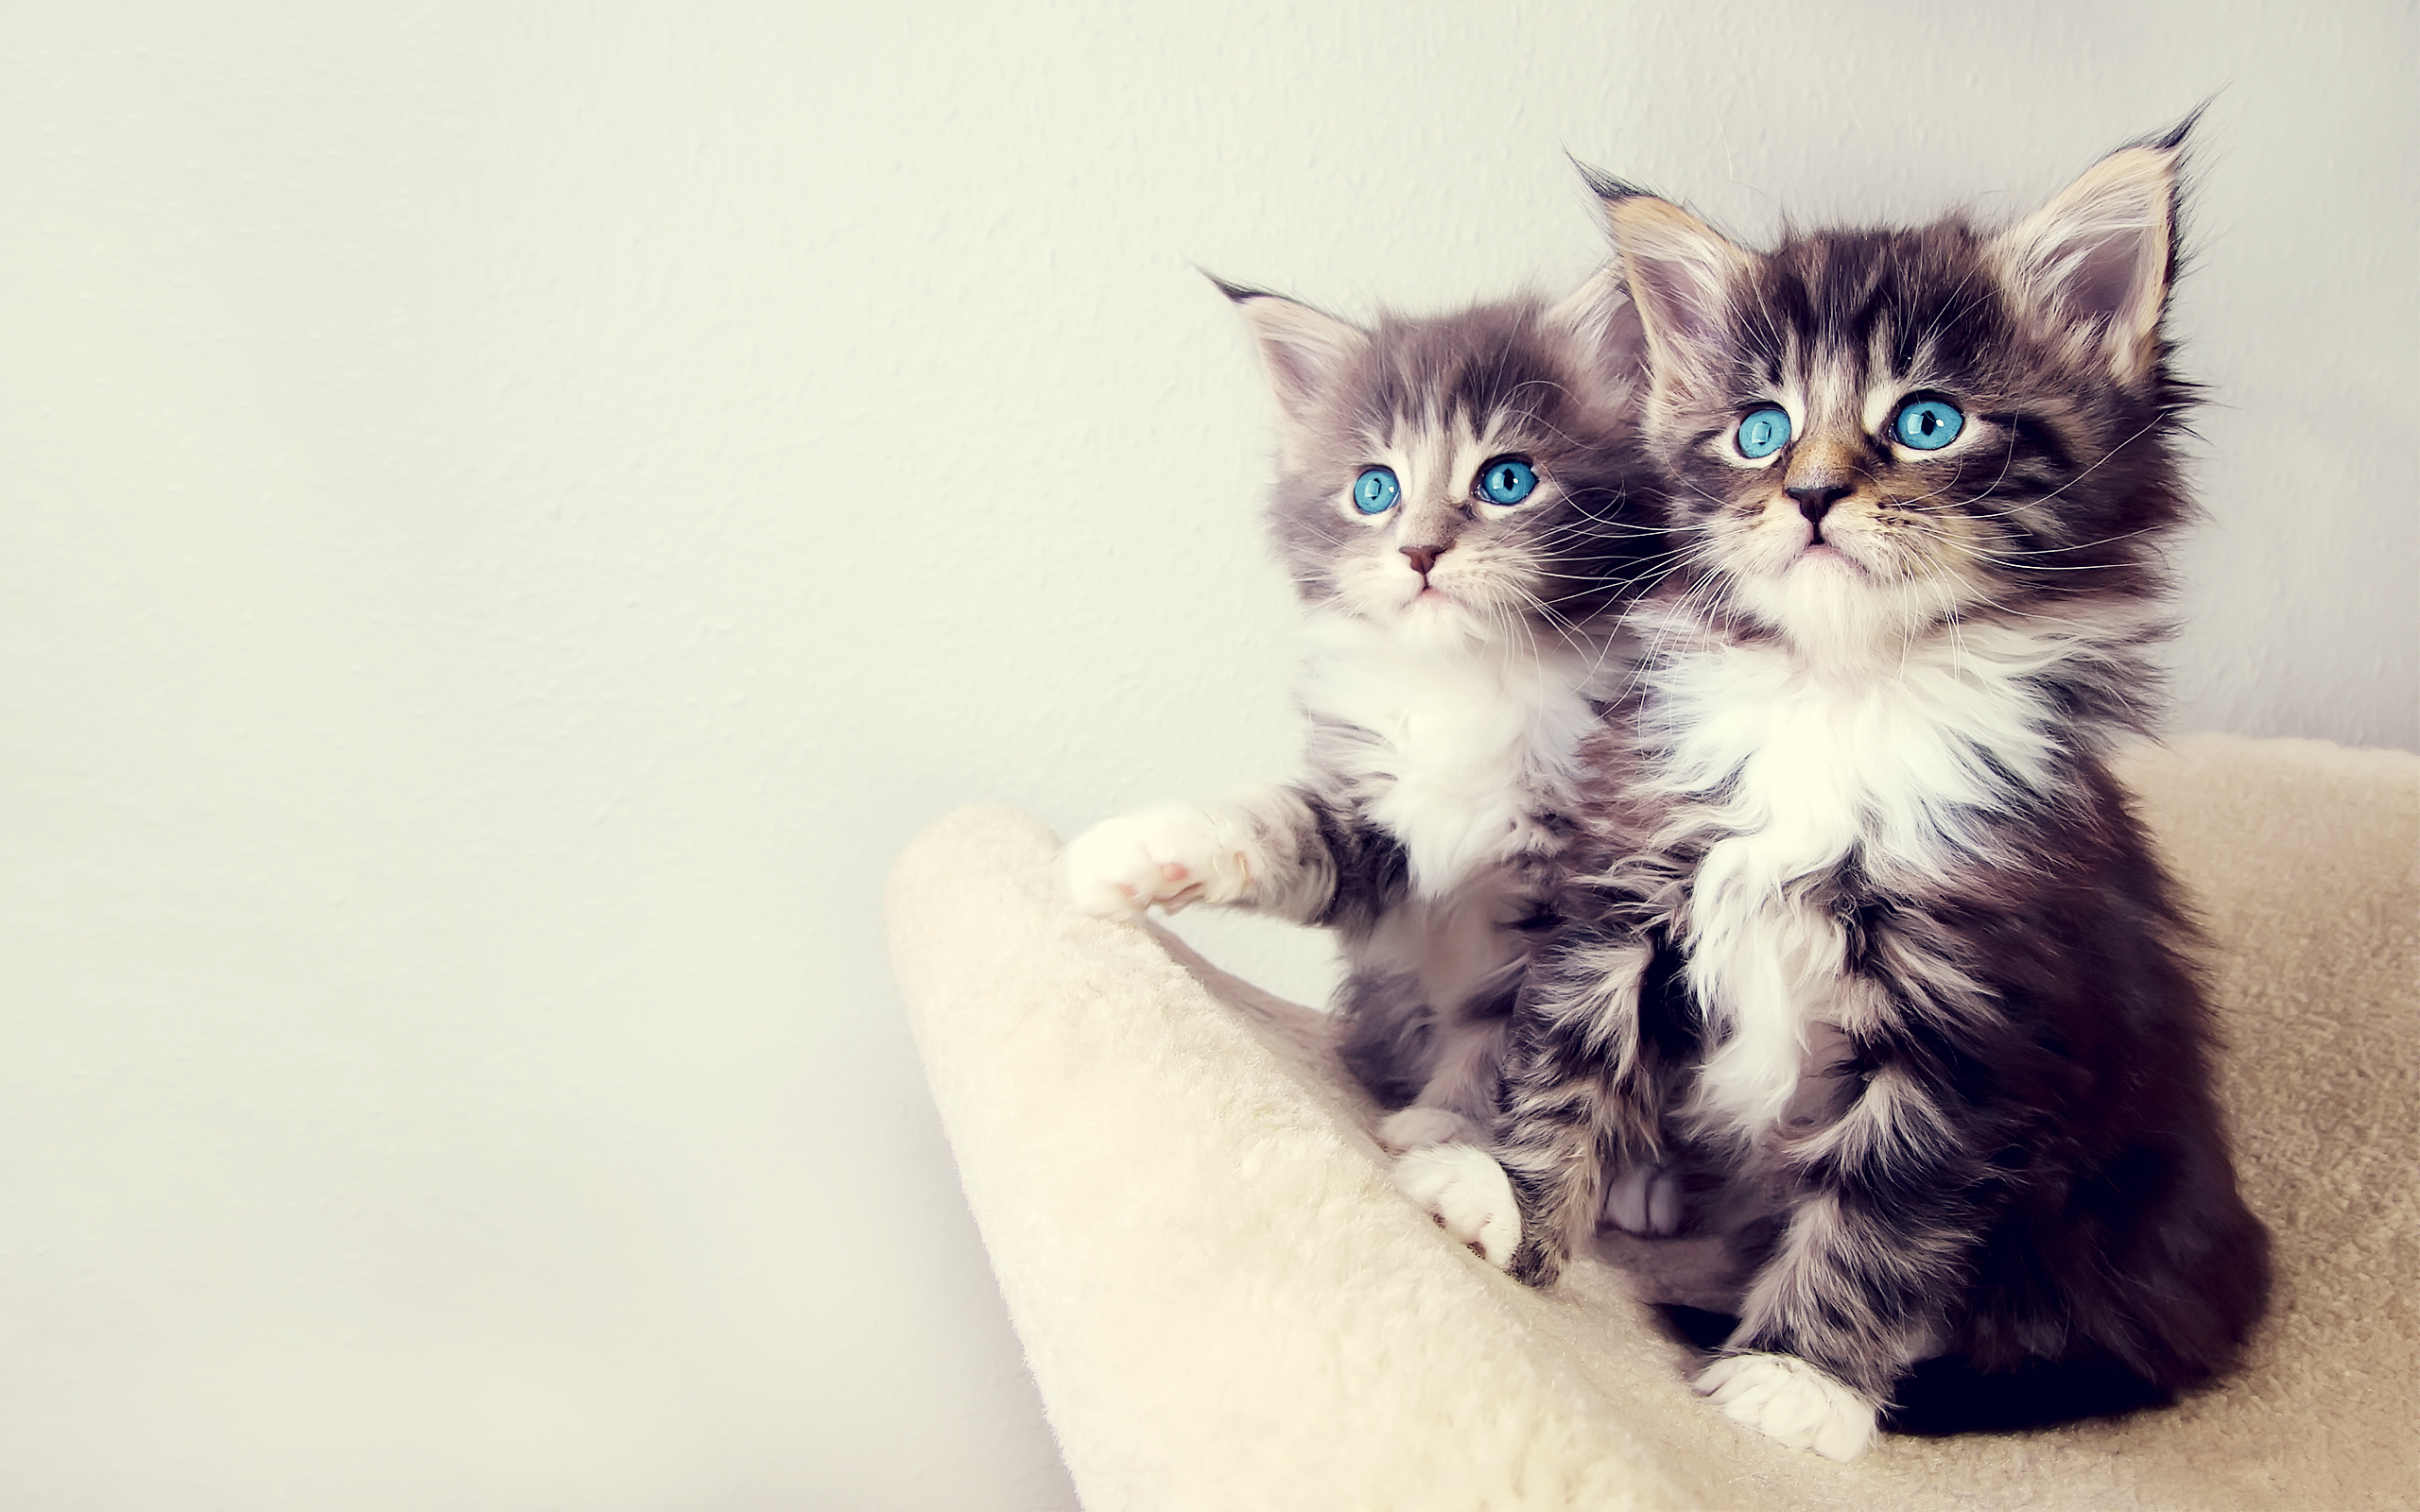 Cute Kittens6790318357 - Cute Kittens - Staring, Kittens, Cute